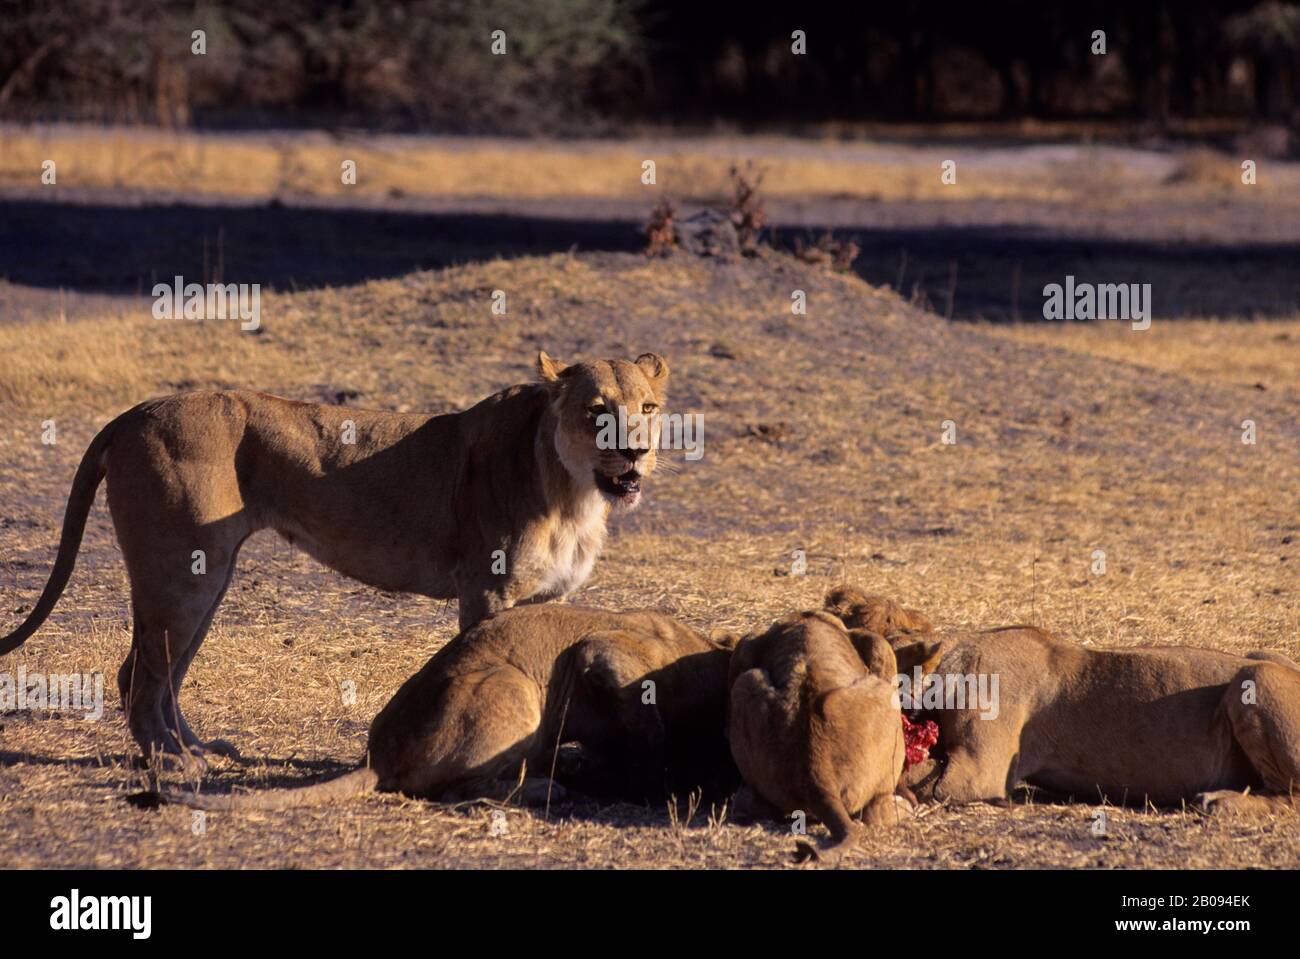 BOTSWANA, OKAVANGO MOMBO ISLAND, LIONS FEEDING ON WARTHOG Stock Photo - Alamy